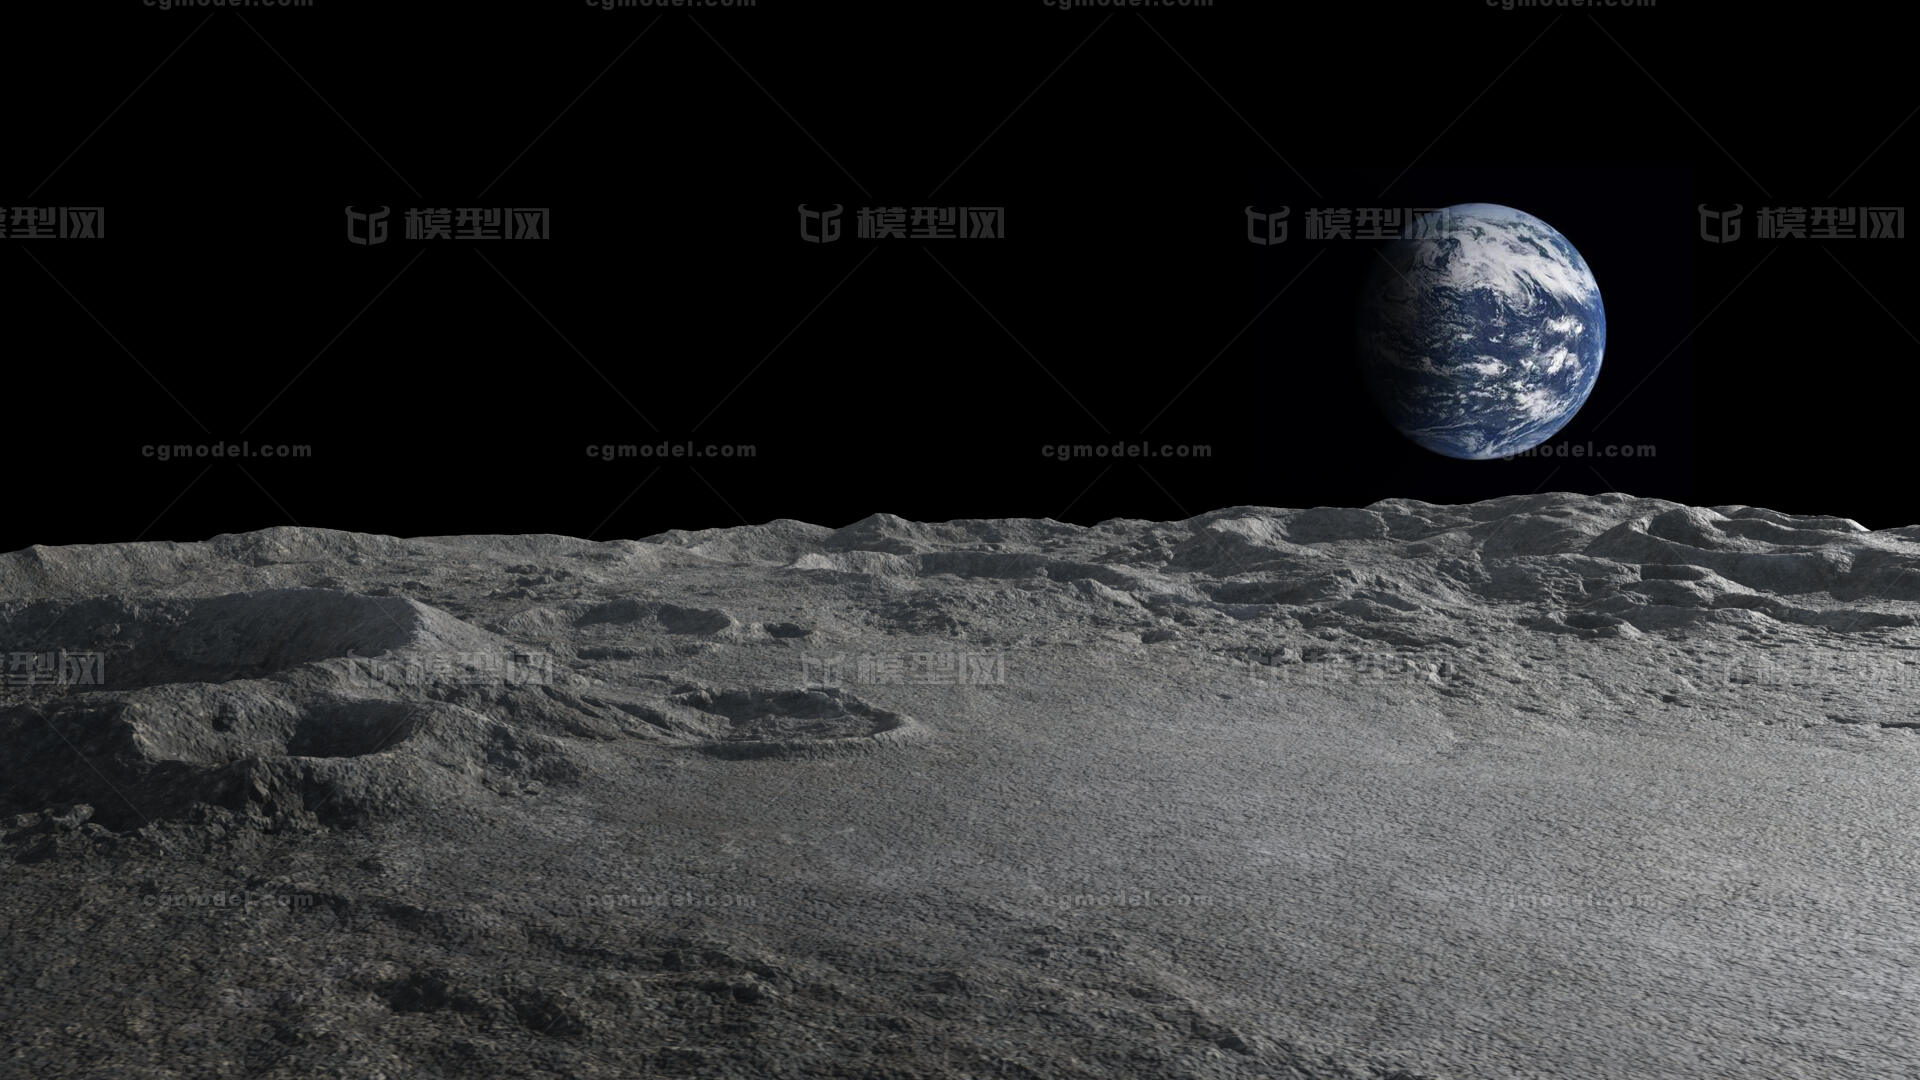 月球表面 月亮 月球 环形山 嫦娥 玉兔 登月 飞行 4k贴图 高精塌陷